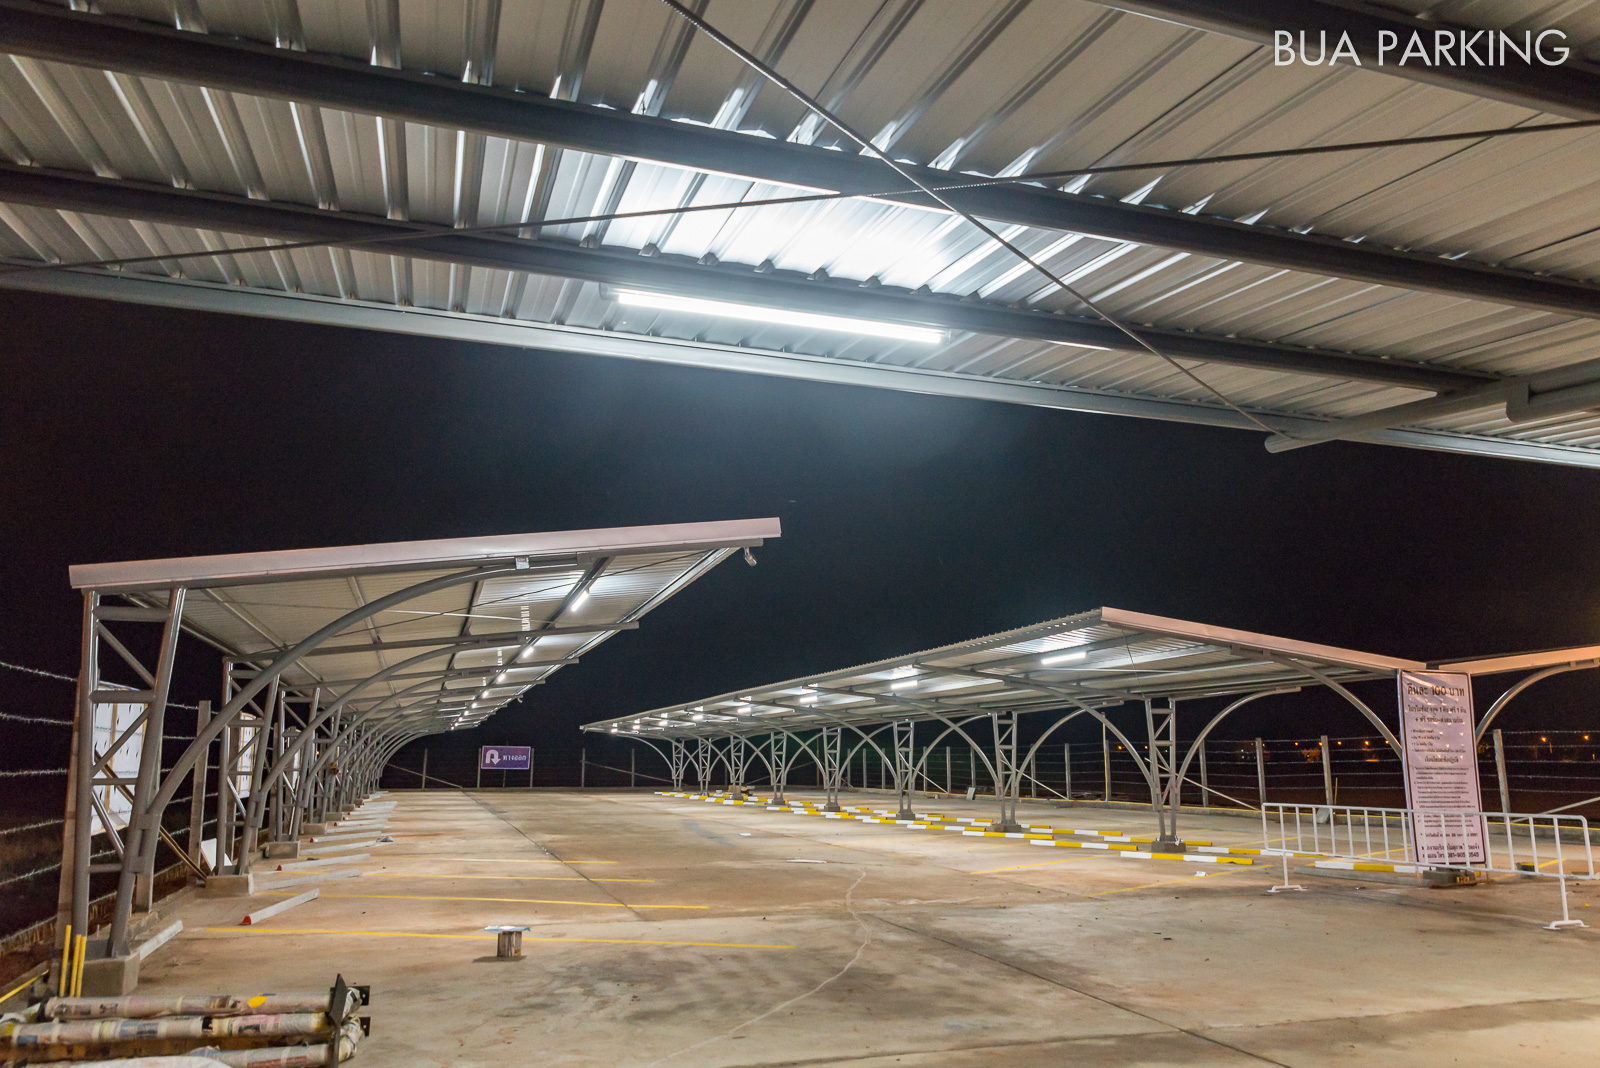 BUA PARKING CEI Airport Parking ที่จอดรถระยะยาว สนามบินเชียงราย กลางคืน